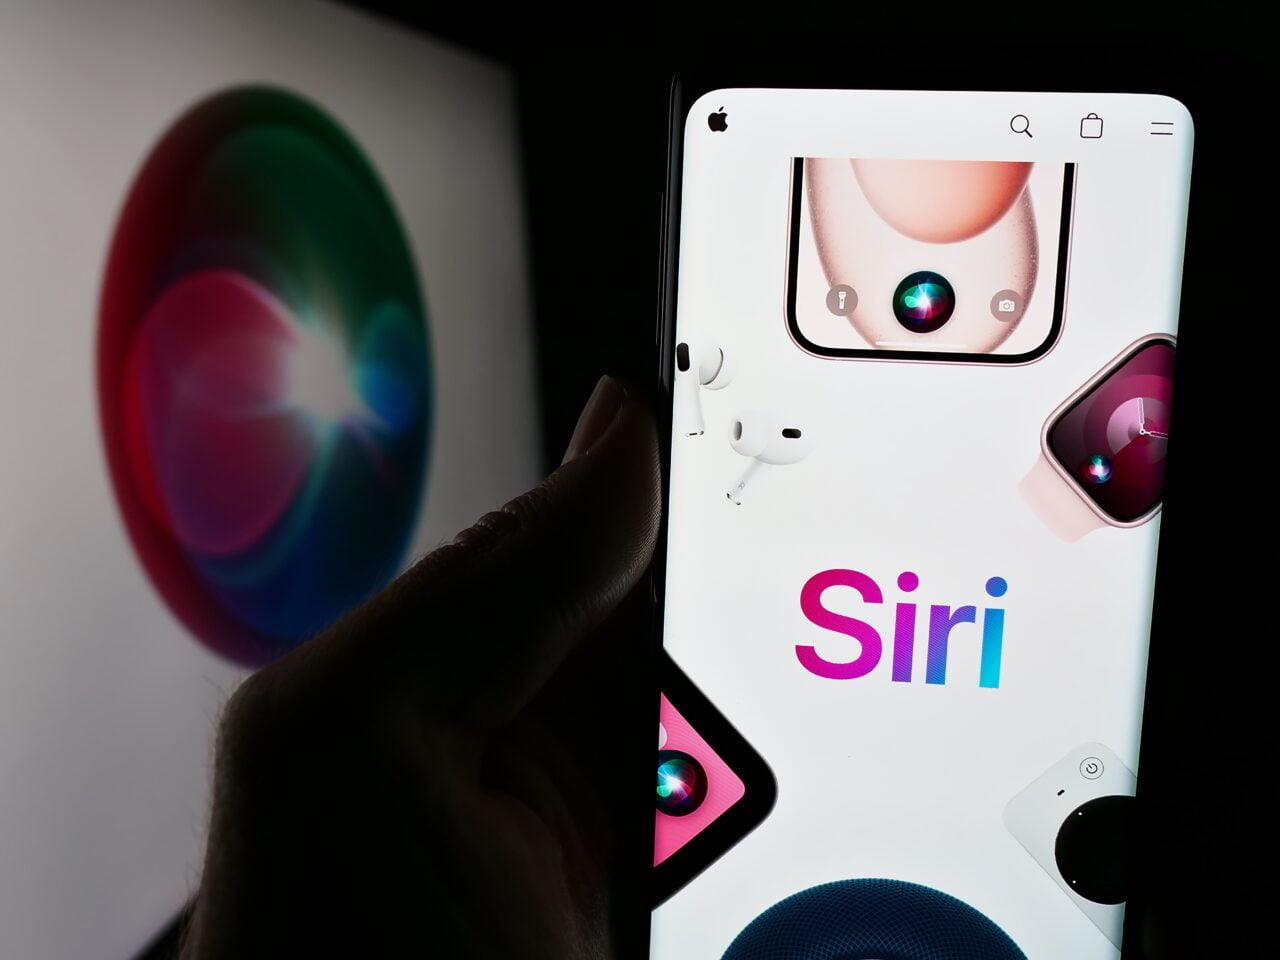 Ręka trzymająca smartfon z grafiką i logo Siri, w tle rozmyty ekran z logo Siri.